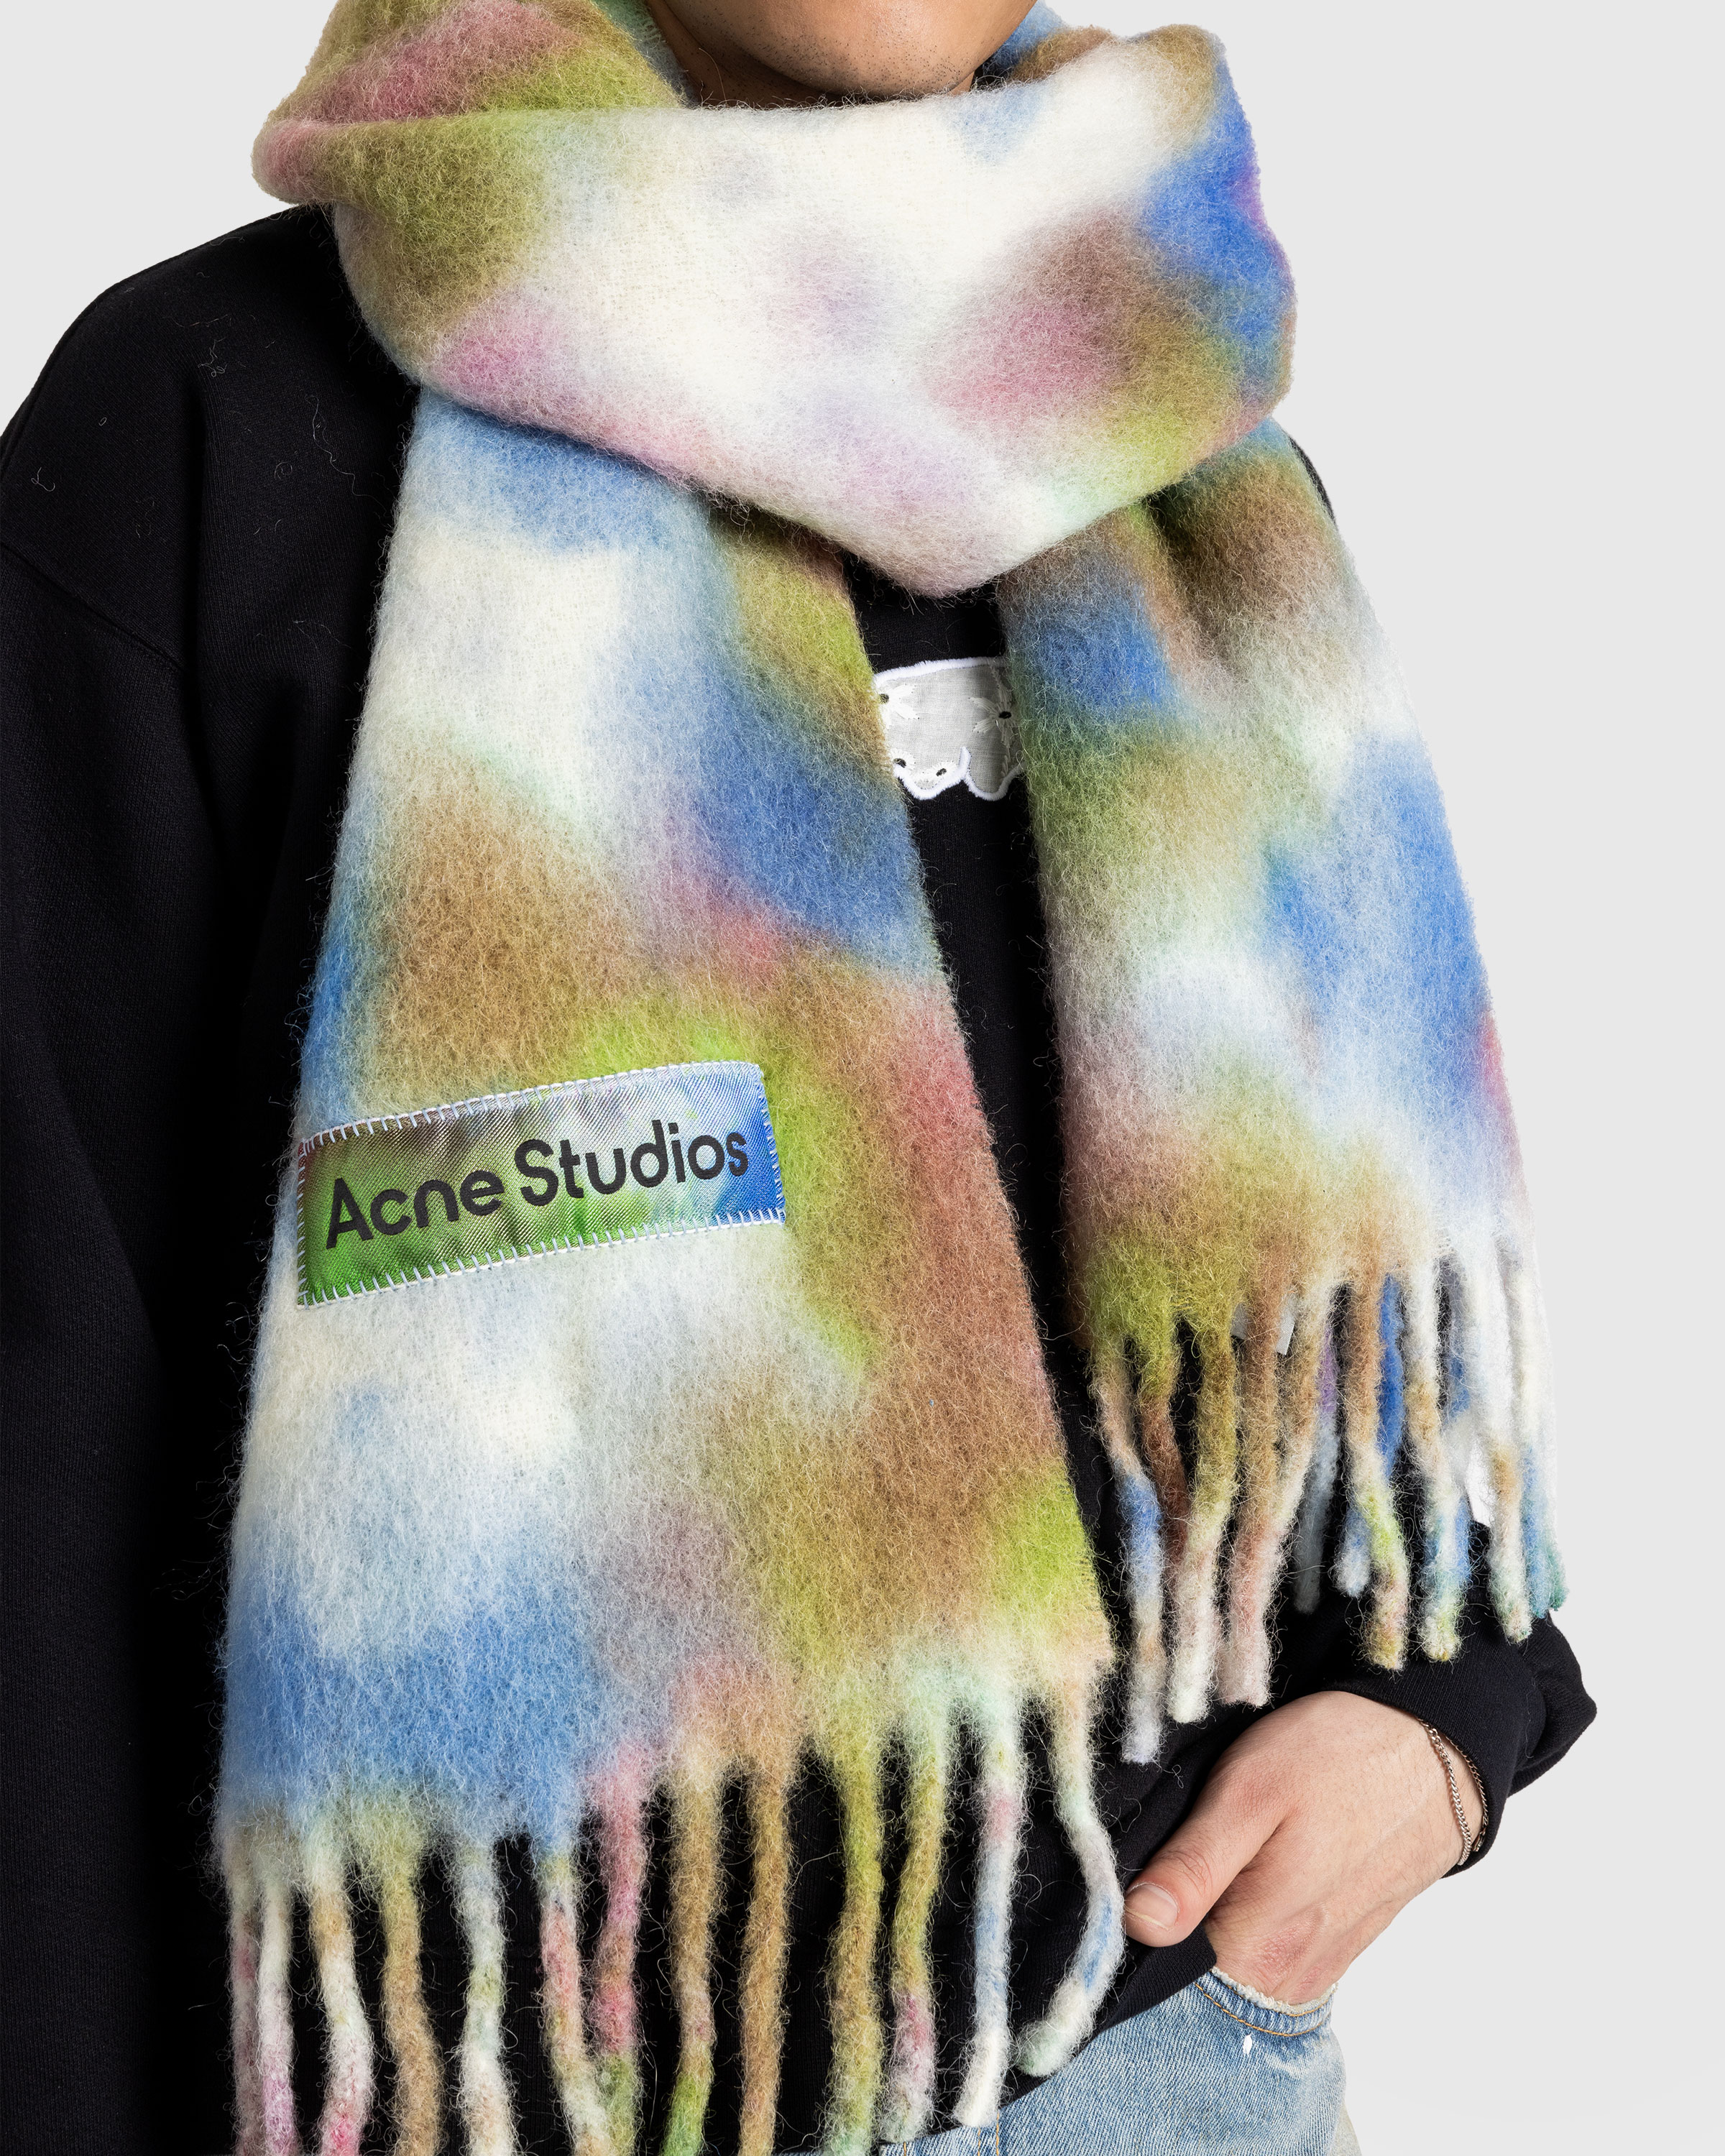 Acne Studios – Tie-Dye Alpaca Wool Scarf Green Multi - Scarves - Green - Image 4